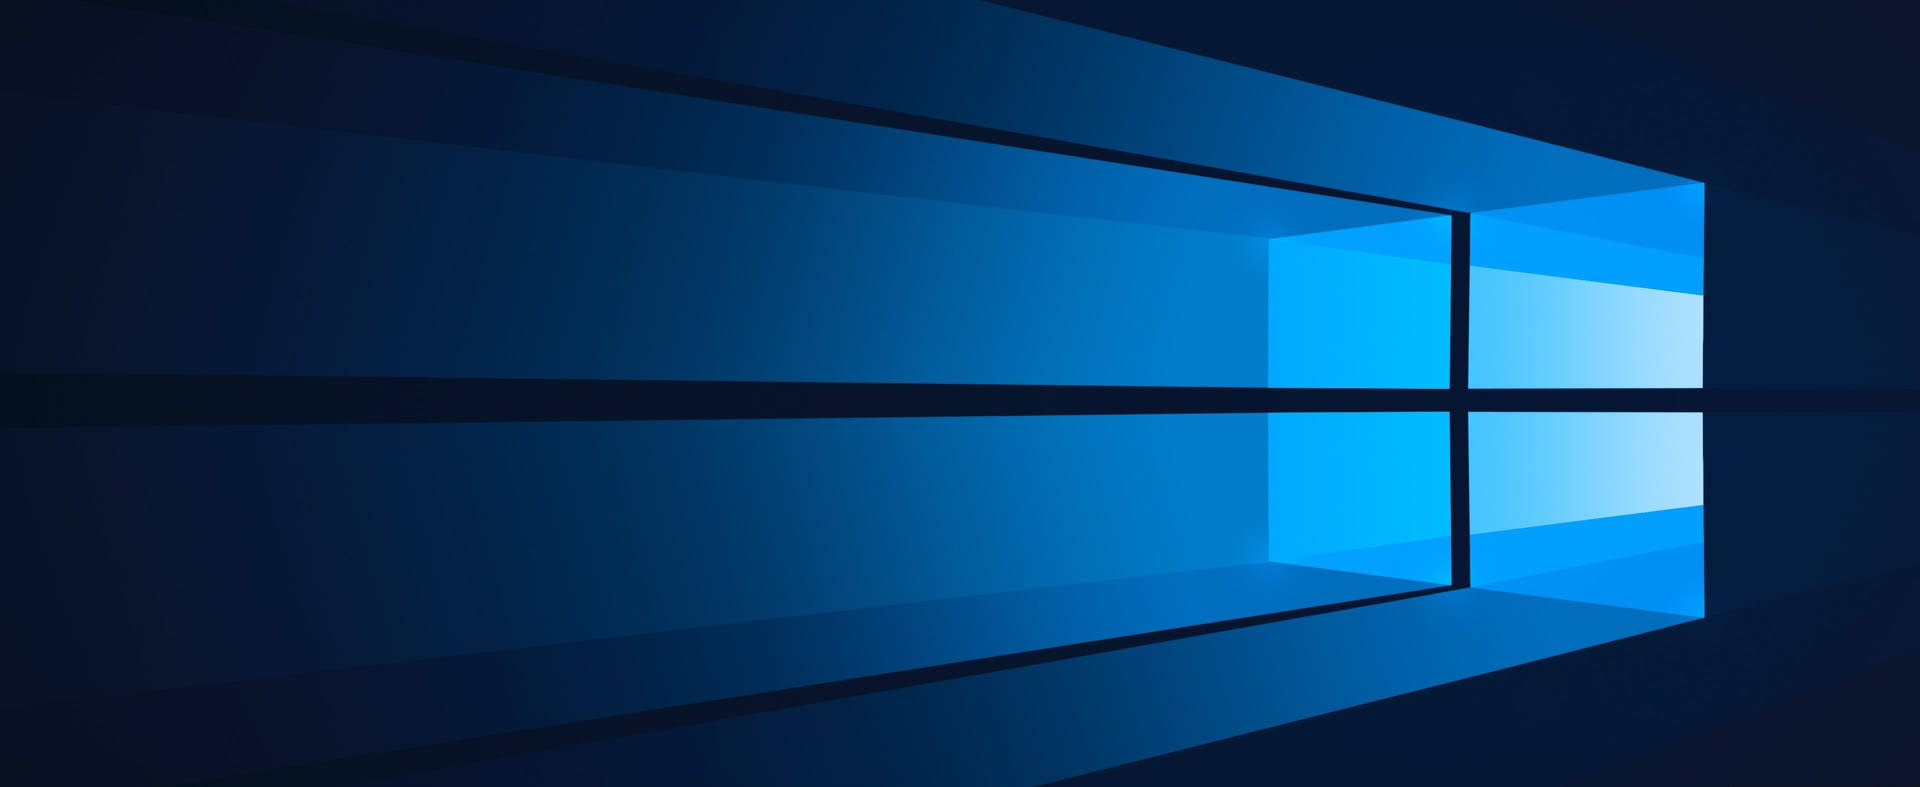 Logodo Windows 10 Com Luz Azul. Papel de Parede